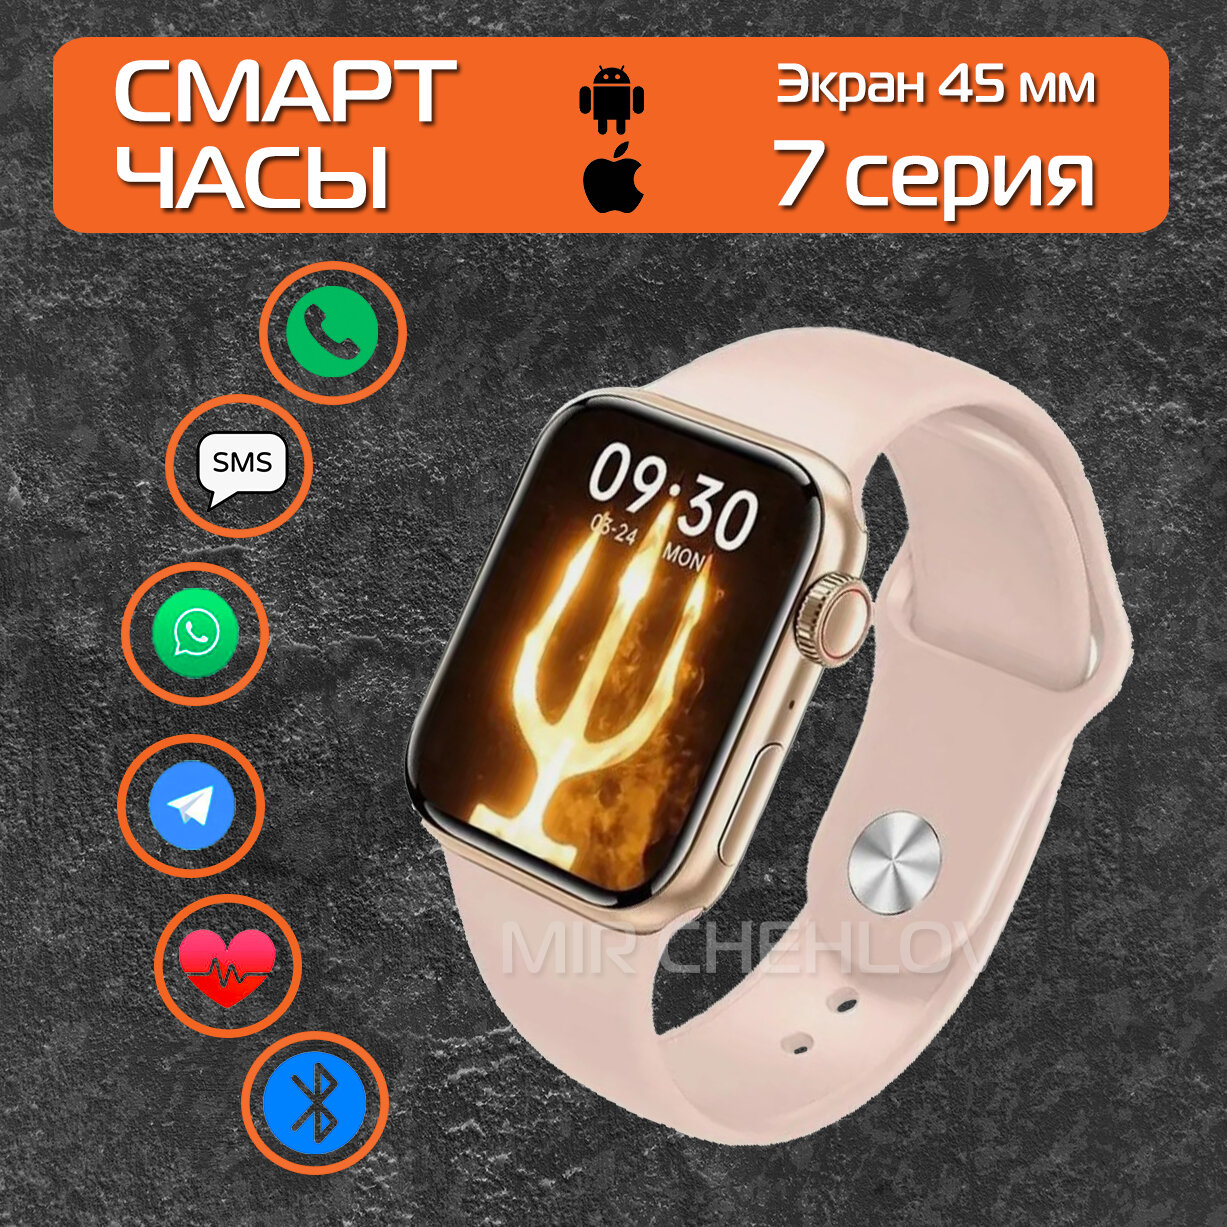 Умные часы Pro Max GS7 Smart Watch 7 серия золотистый